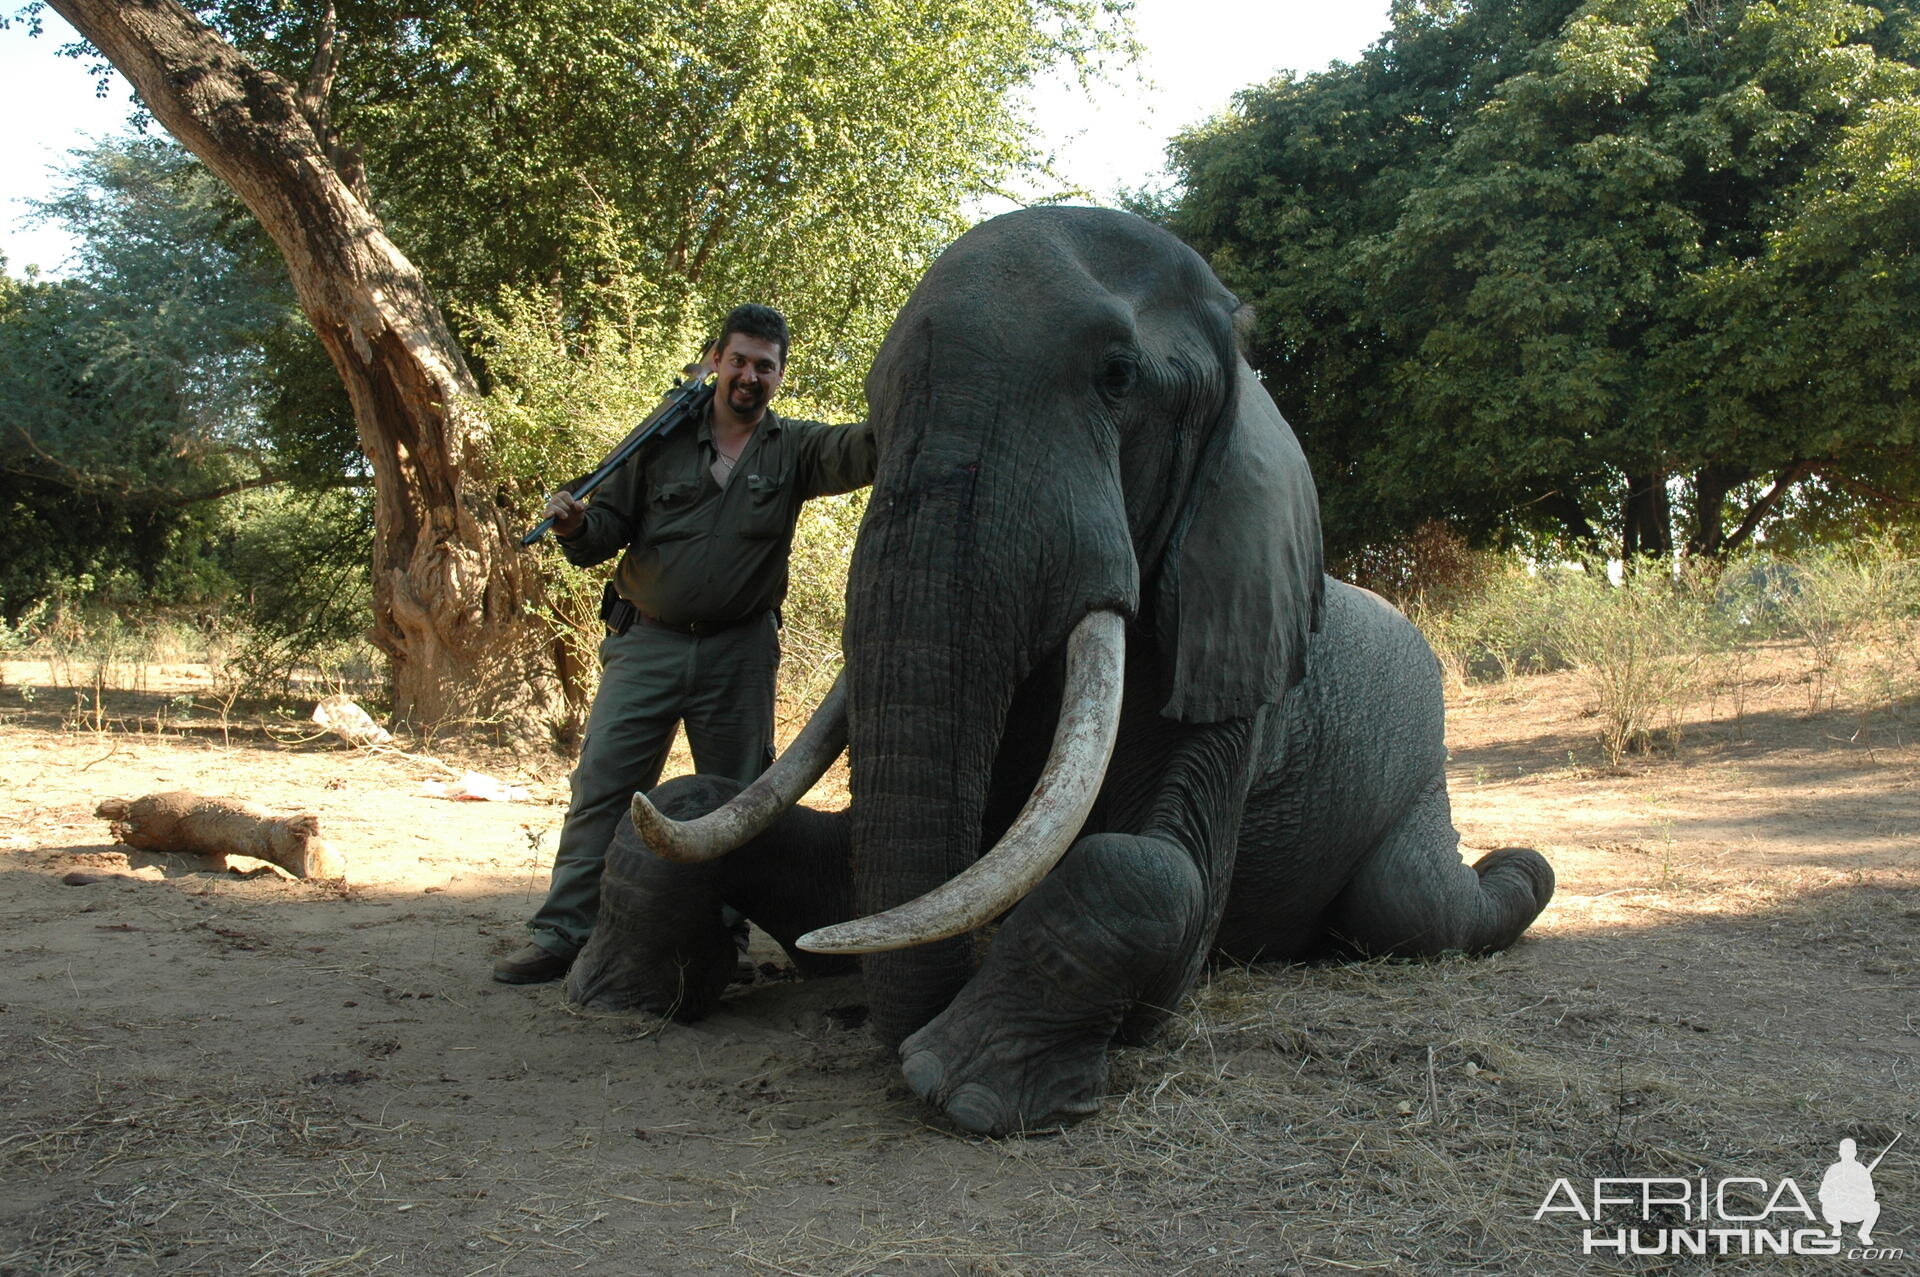 40/41 pounds Elephant hunted in Zimbabwe